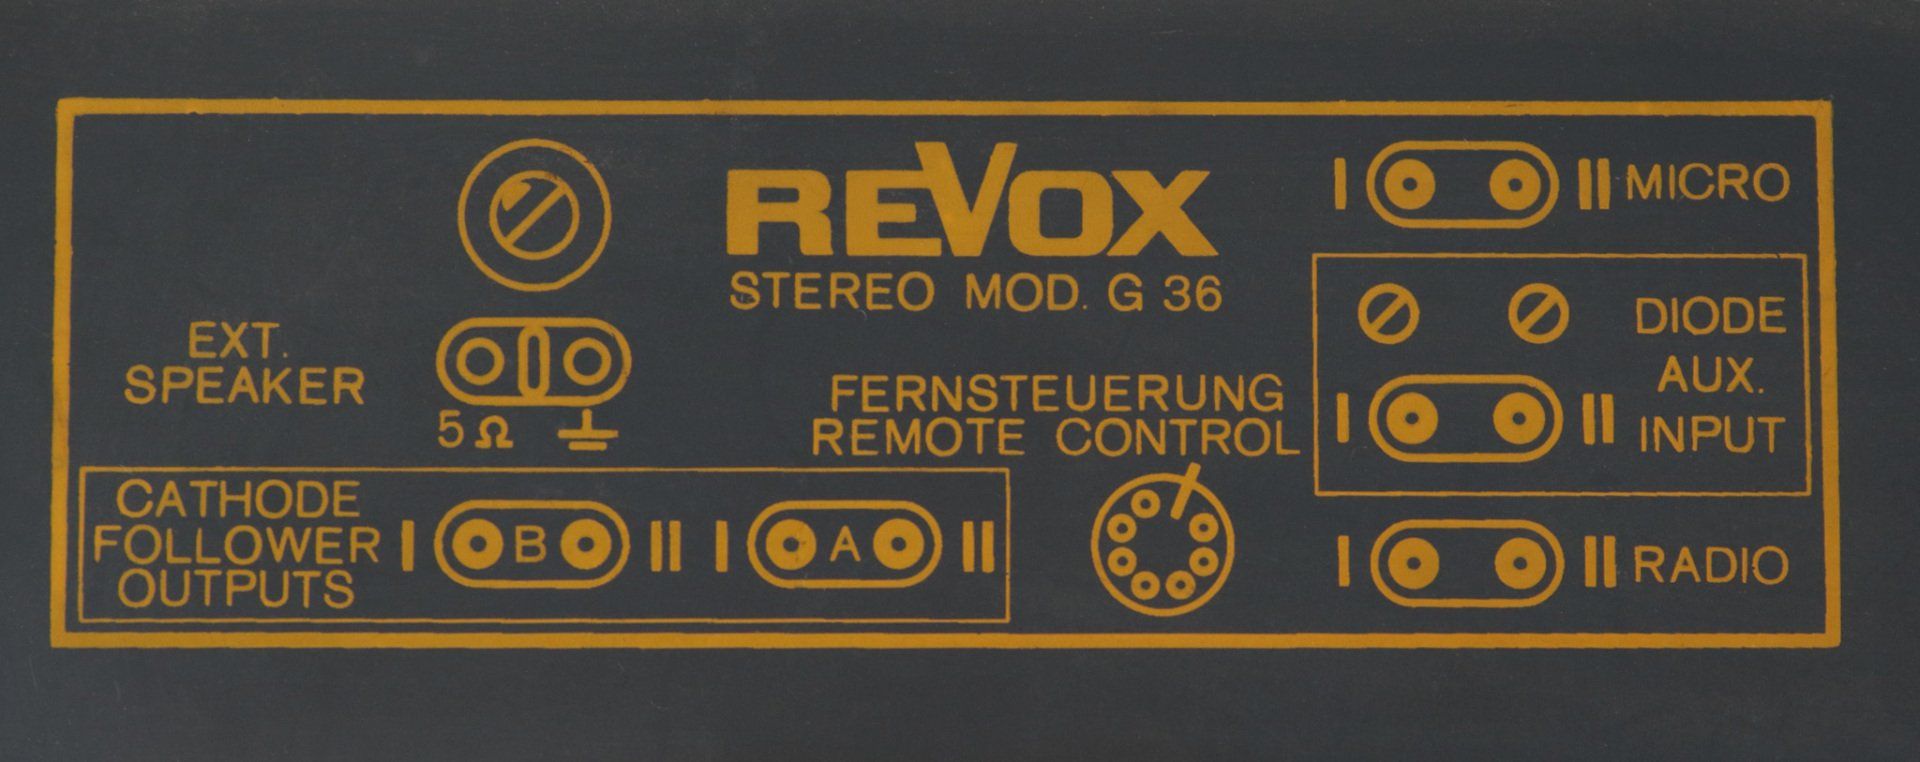 revox g36 nameplate